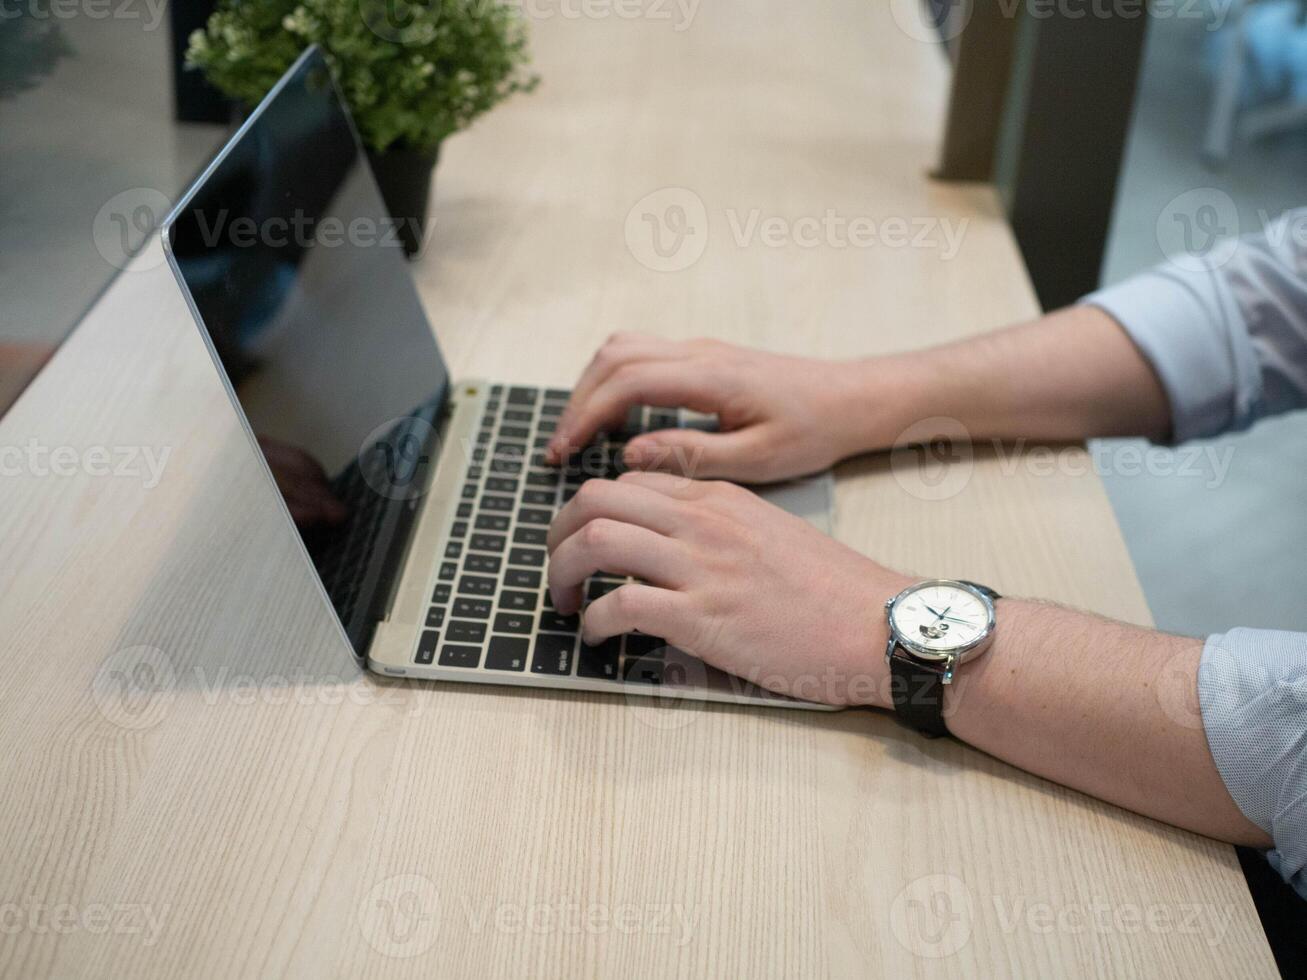 Work job career occupation technology keyboard digital computer notebook business button hand finger body part human using desktop object future photo